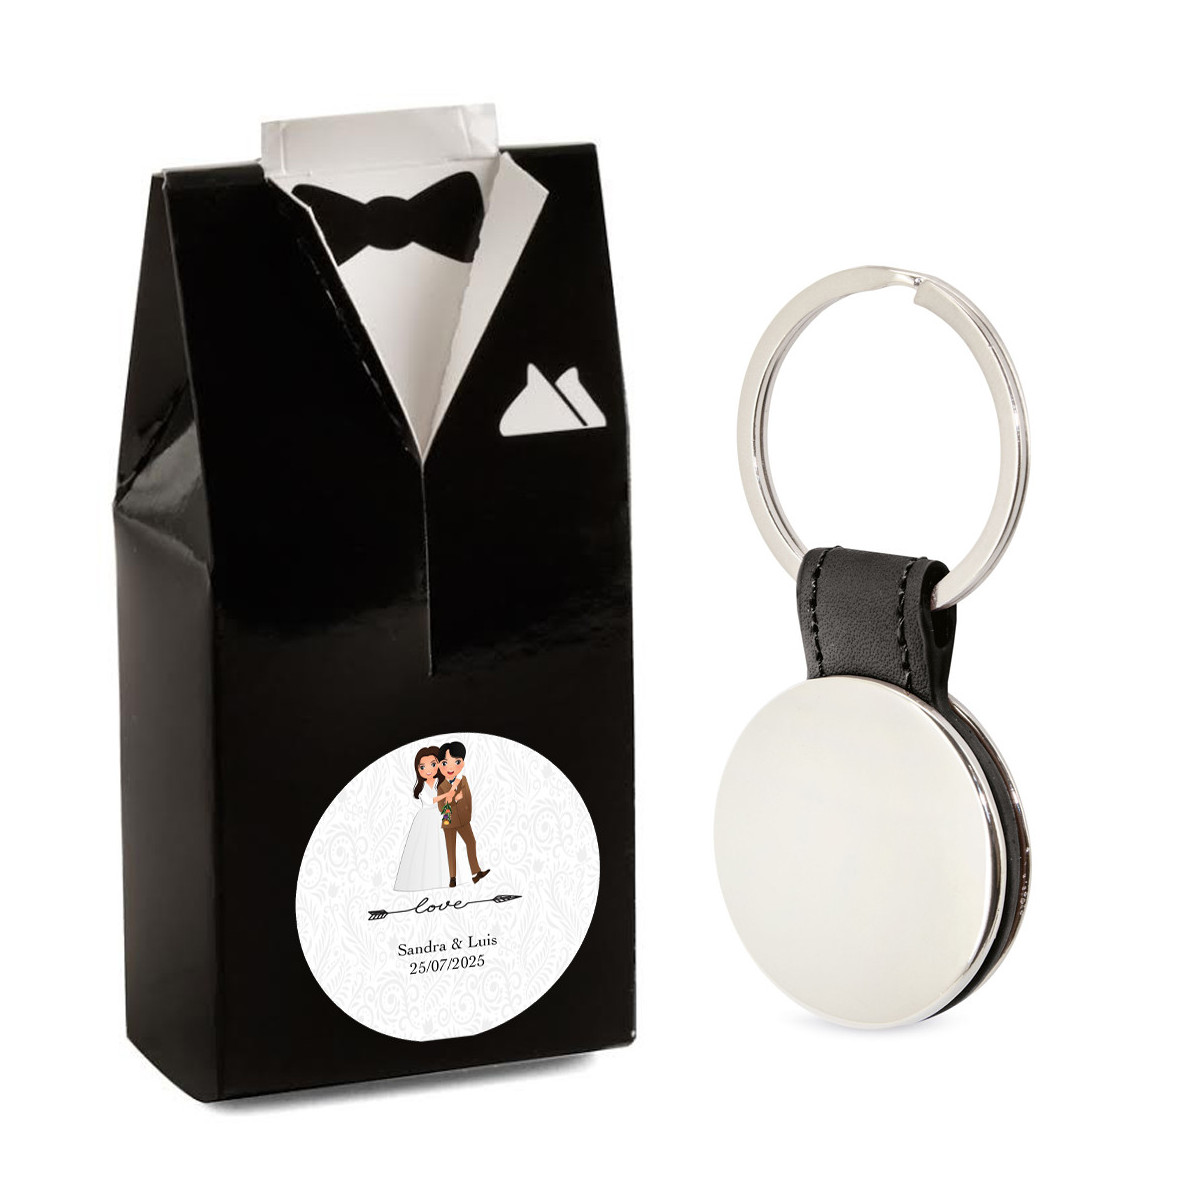 Porte clés élégant pour hommes dans une boîte cadeau design smoking et autocollant de mariage personnalisable